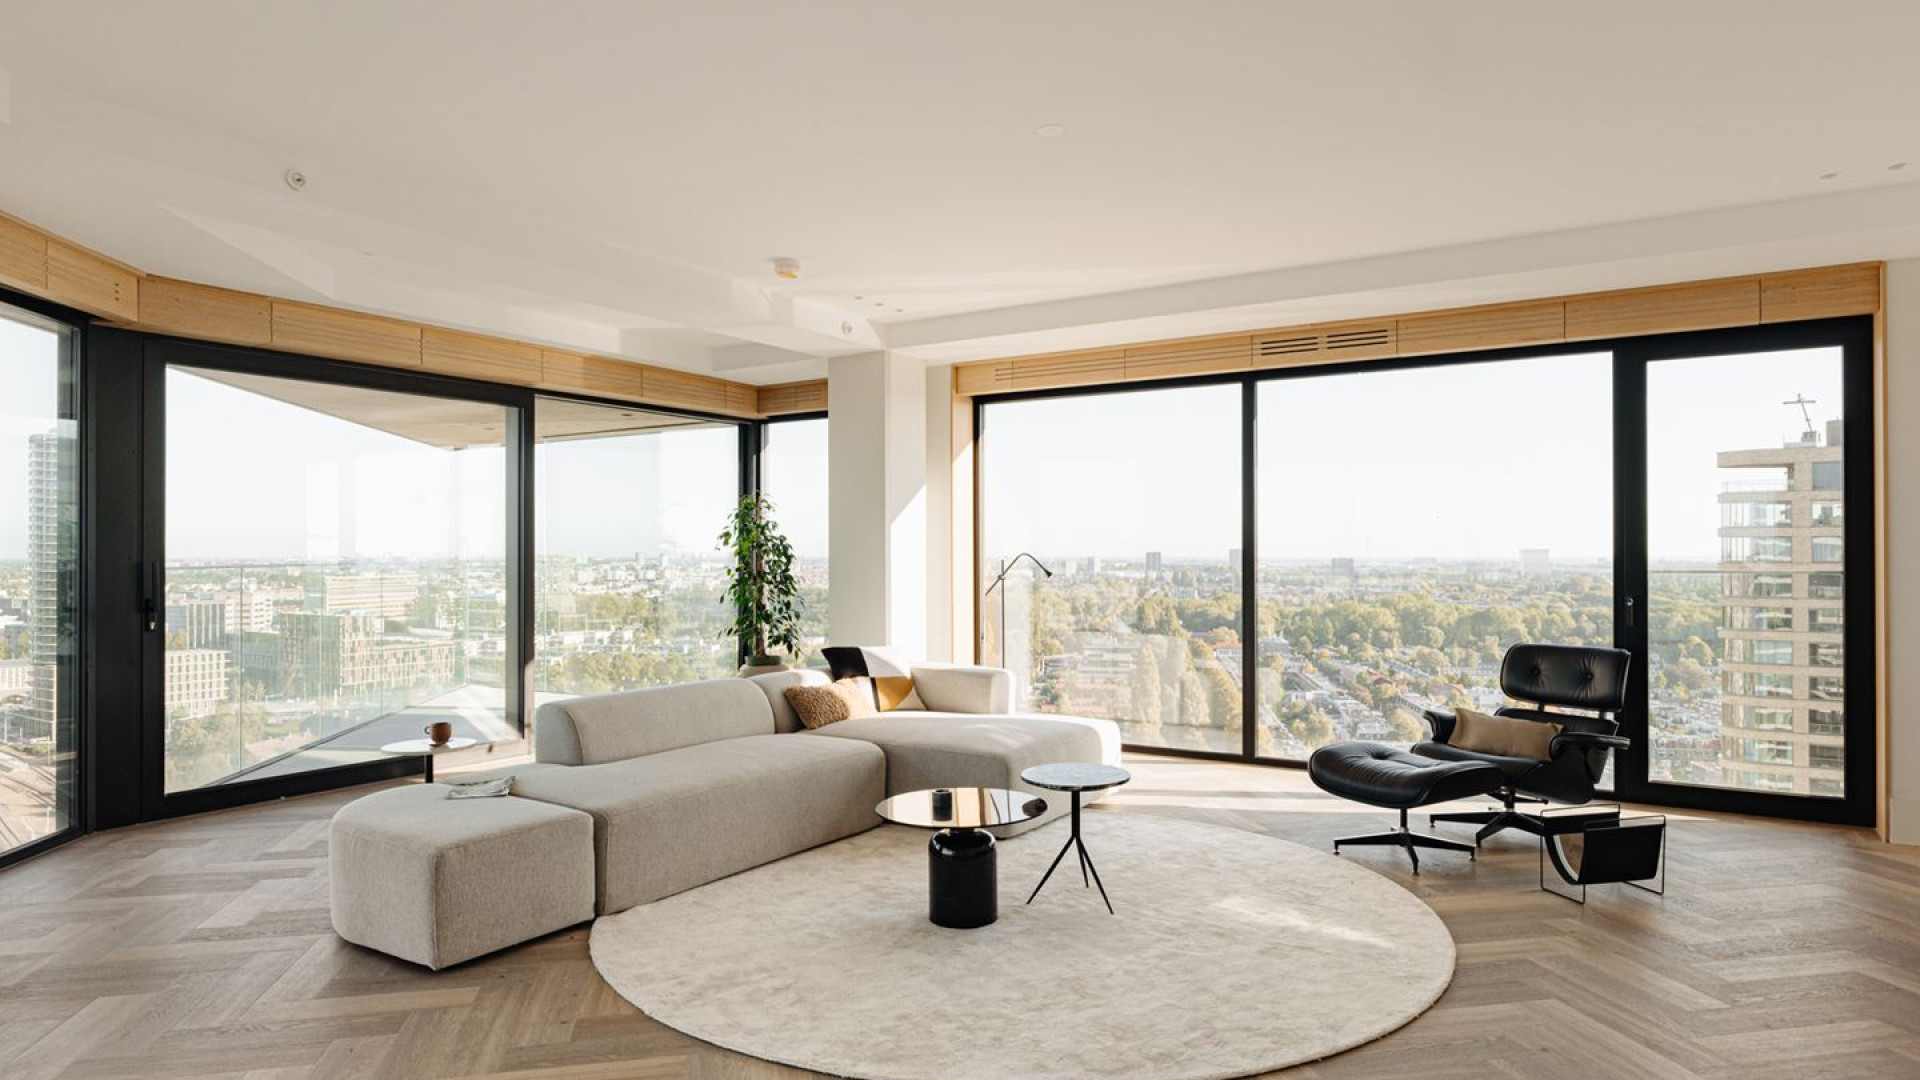 Voetballer Donyell Malen koopt dit bijna 5 miljoen kostende appartement met adembenemend uitzicht! Zie foto's 2